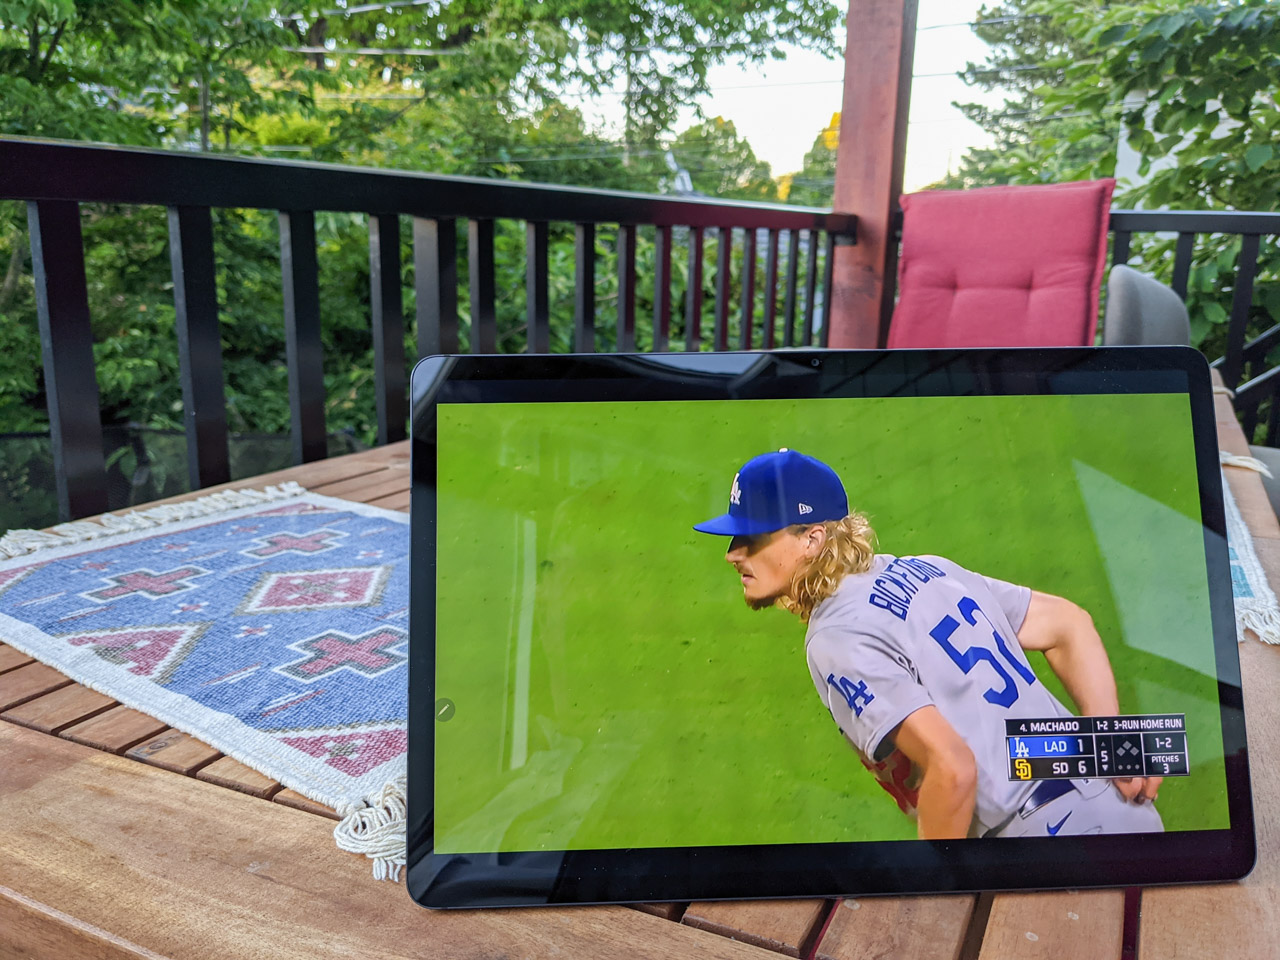 Samsung S7+ tab displaying an MLB.tv ball game